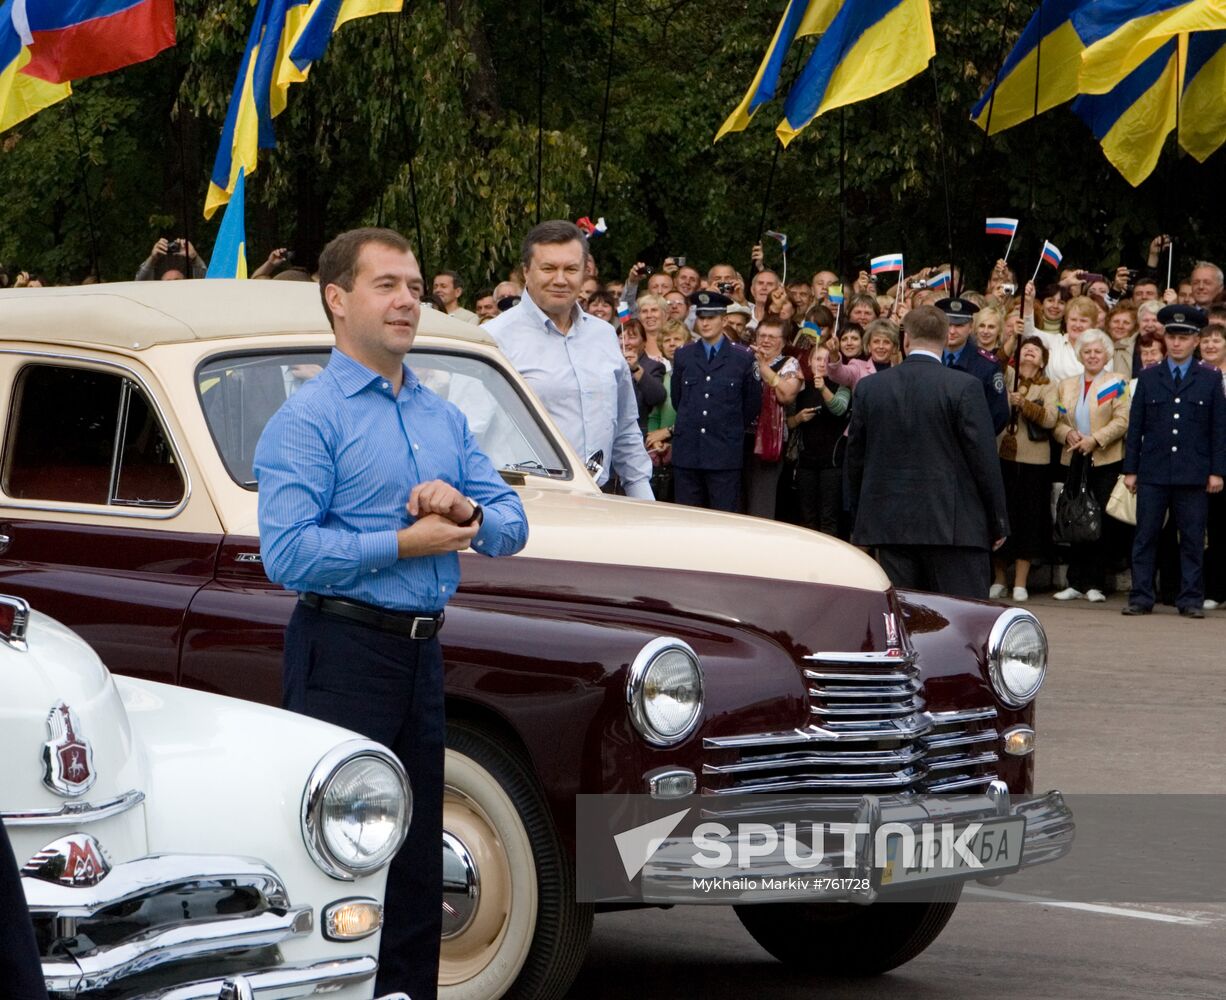 Dmitry Medvedev and Viktor Yanukovich arrive in Glukhov